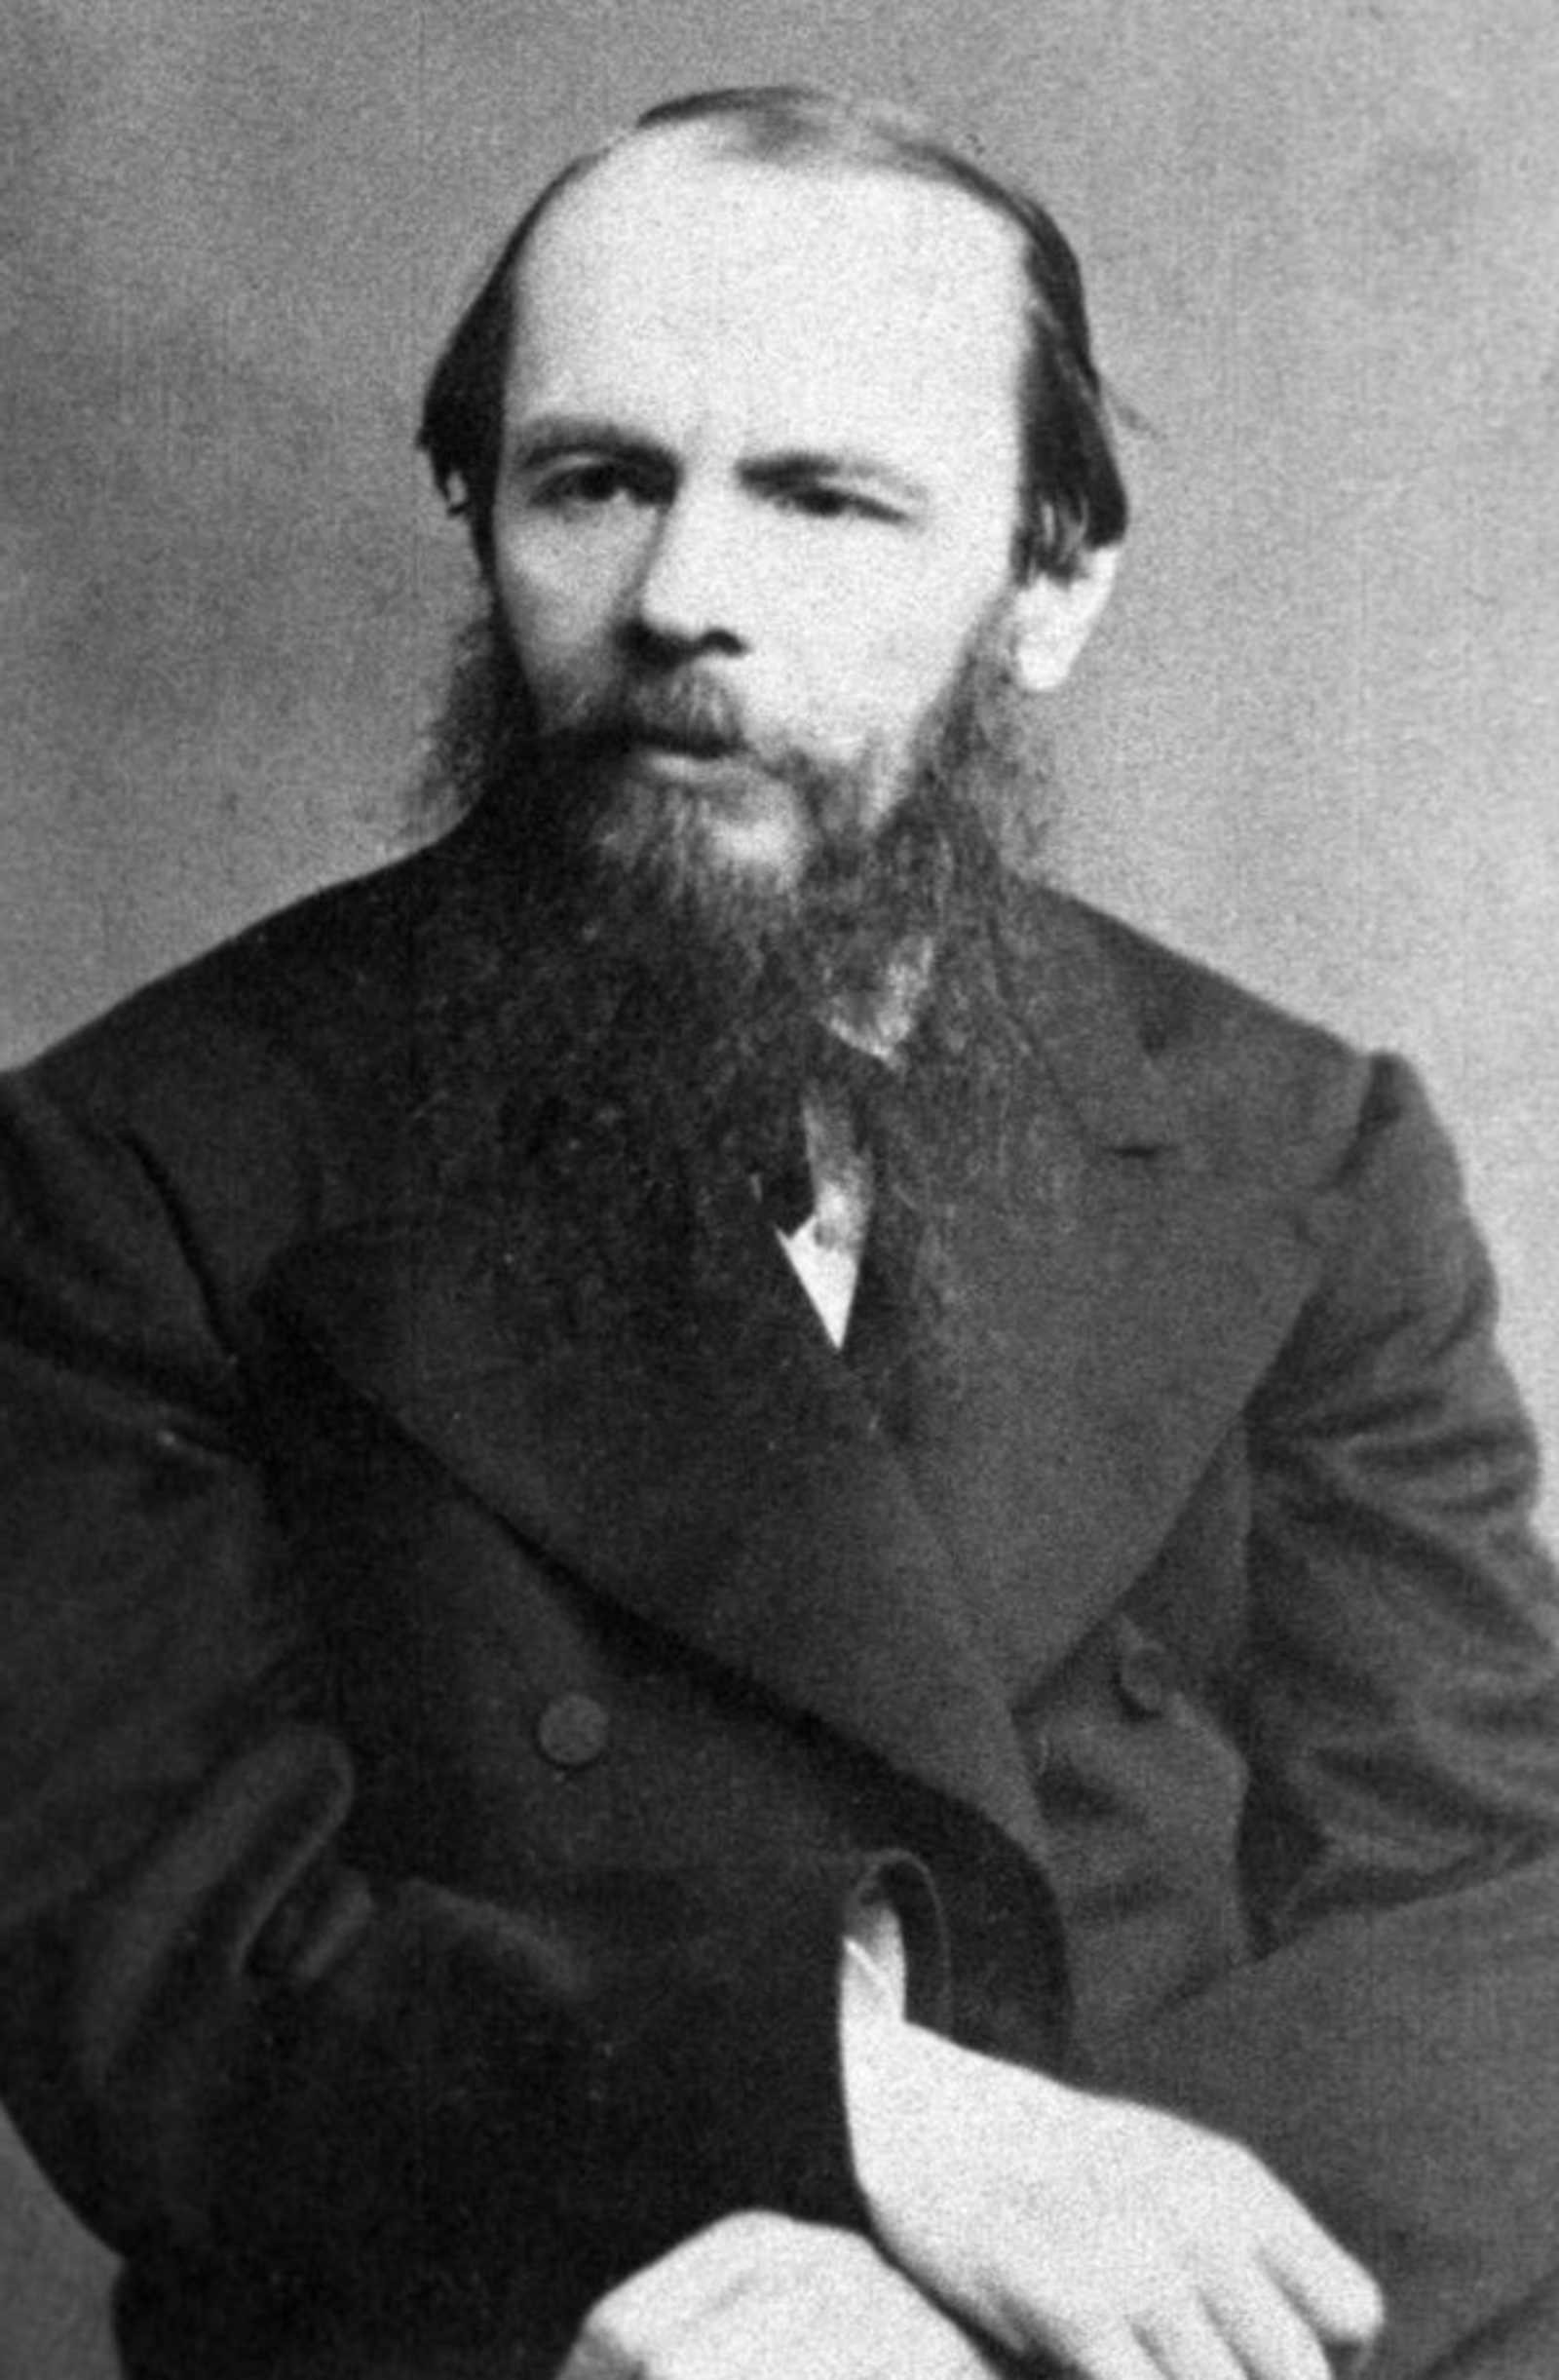 Федор Михайлович Достоевский (1821-1881)